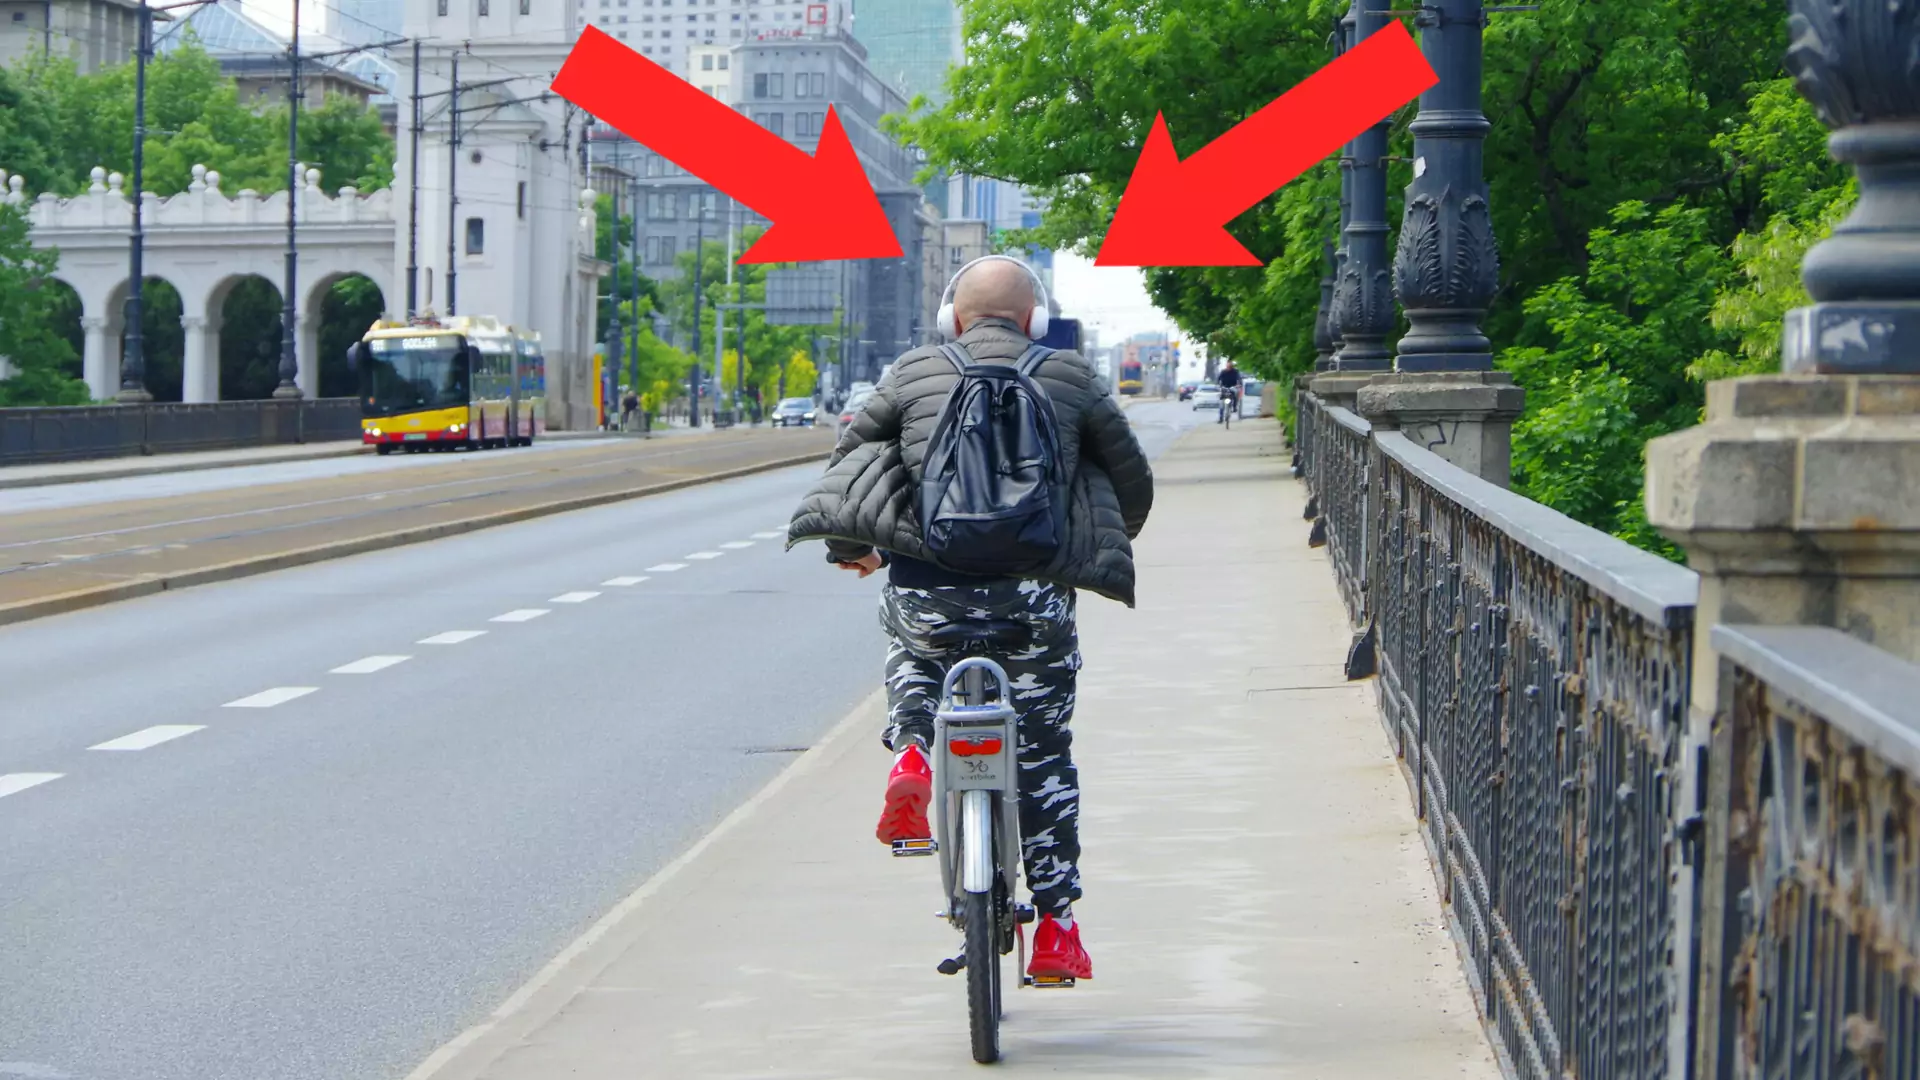 Pomysł zakazu jazdy rowerem w słuchawkach. "Absurdalna propozycja"